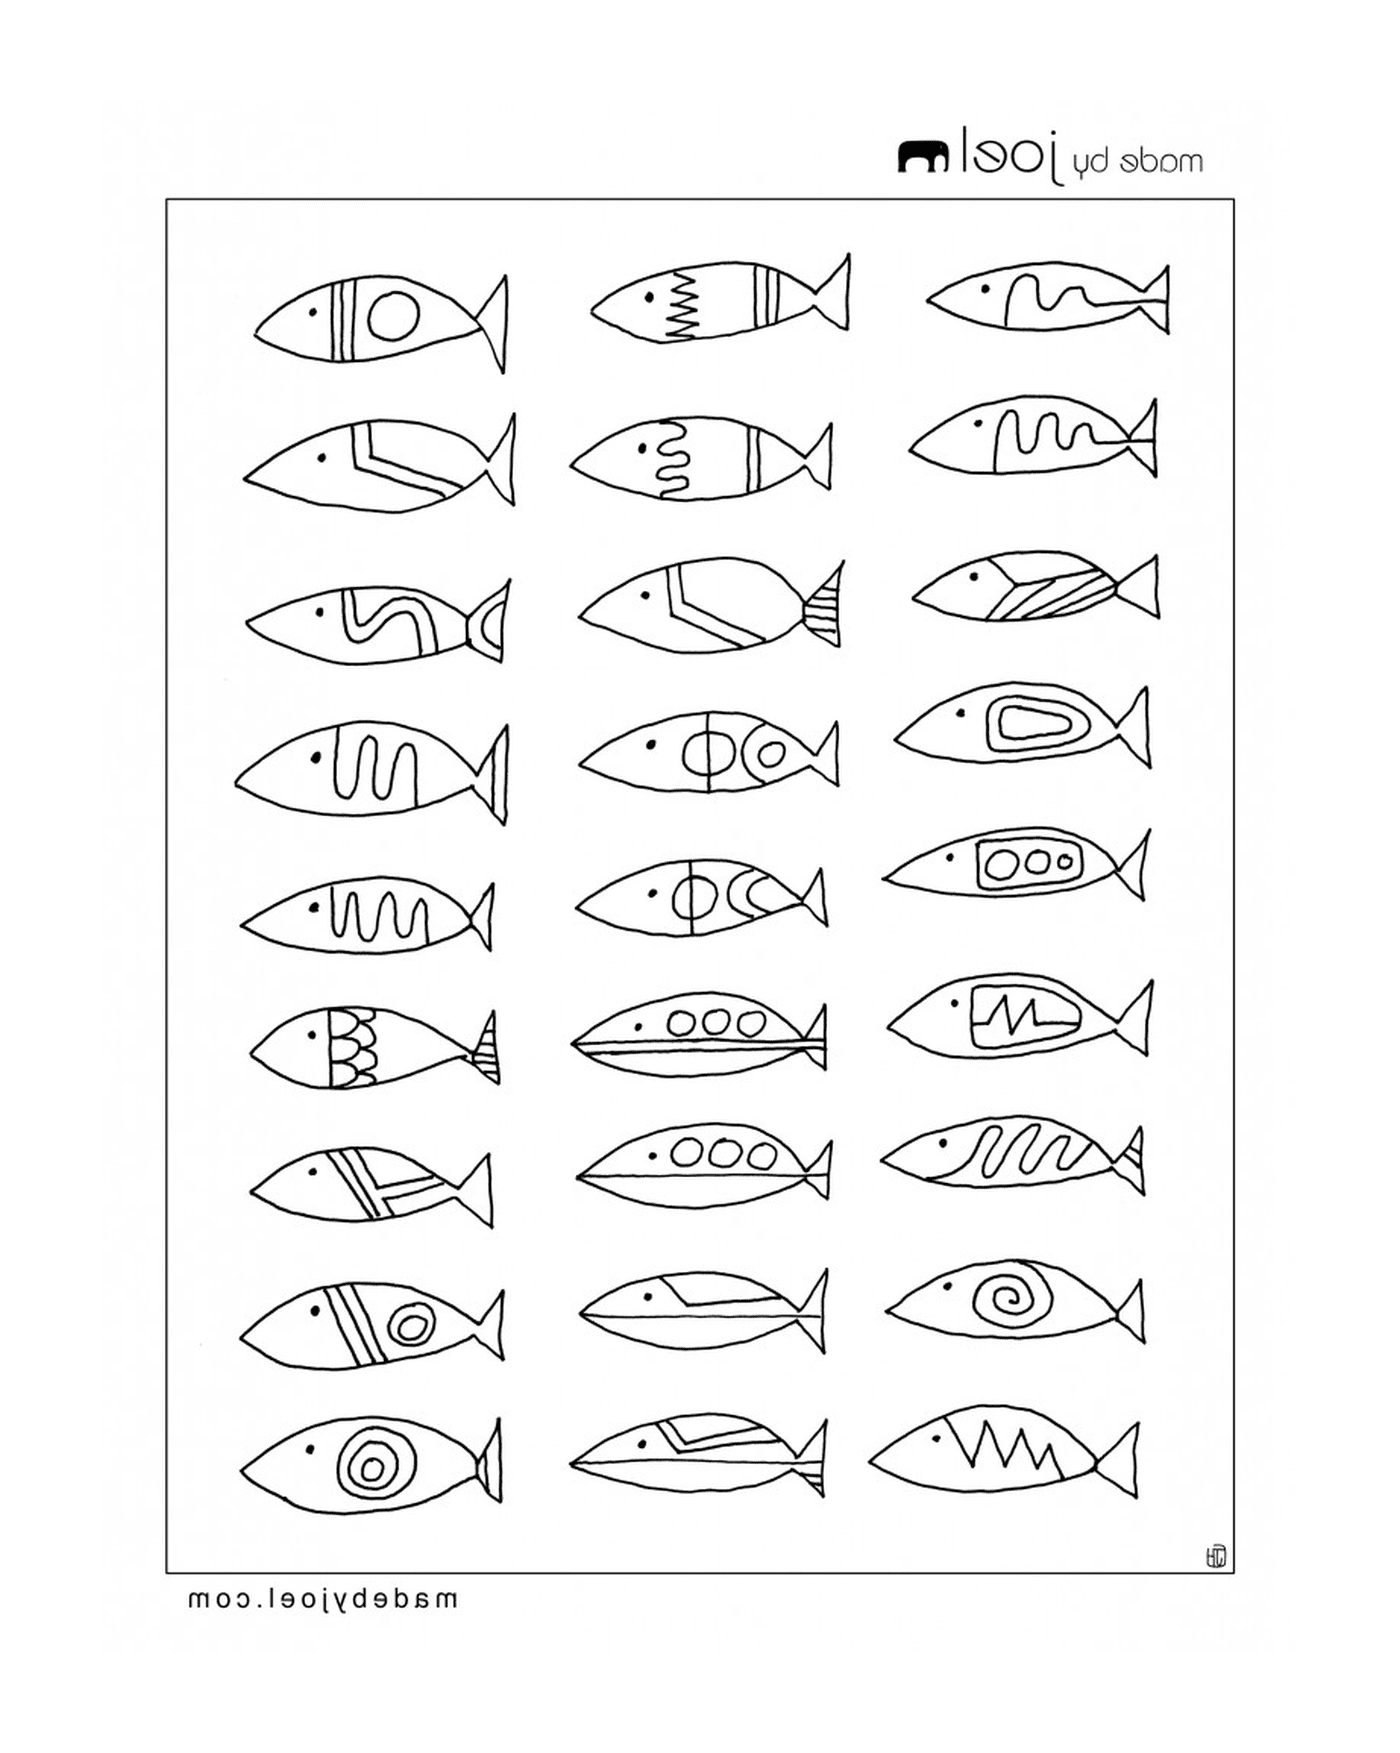  Verschiedene Arten von Fischen auf dieser Seite 